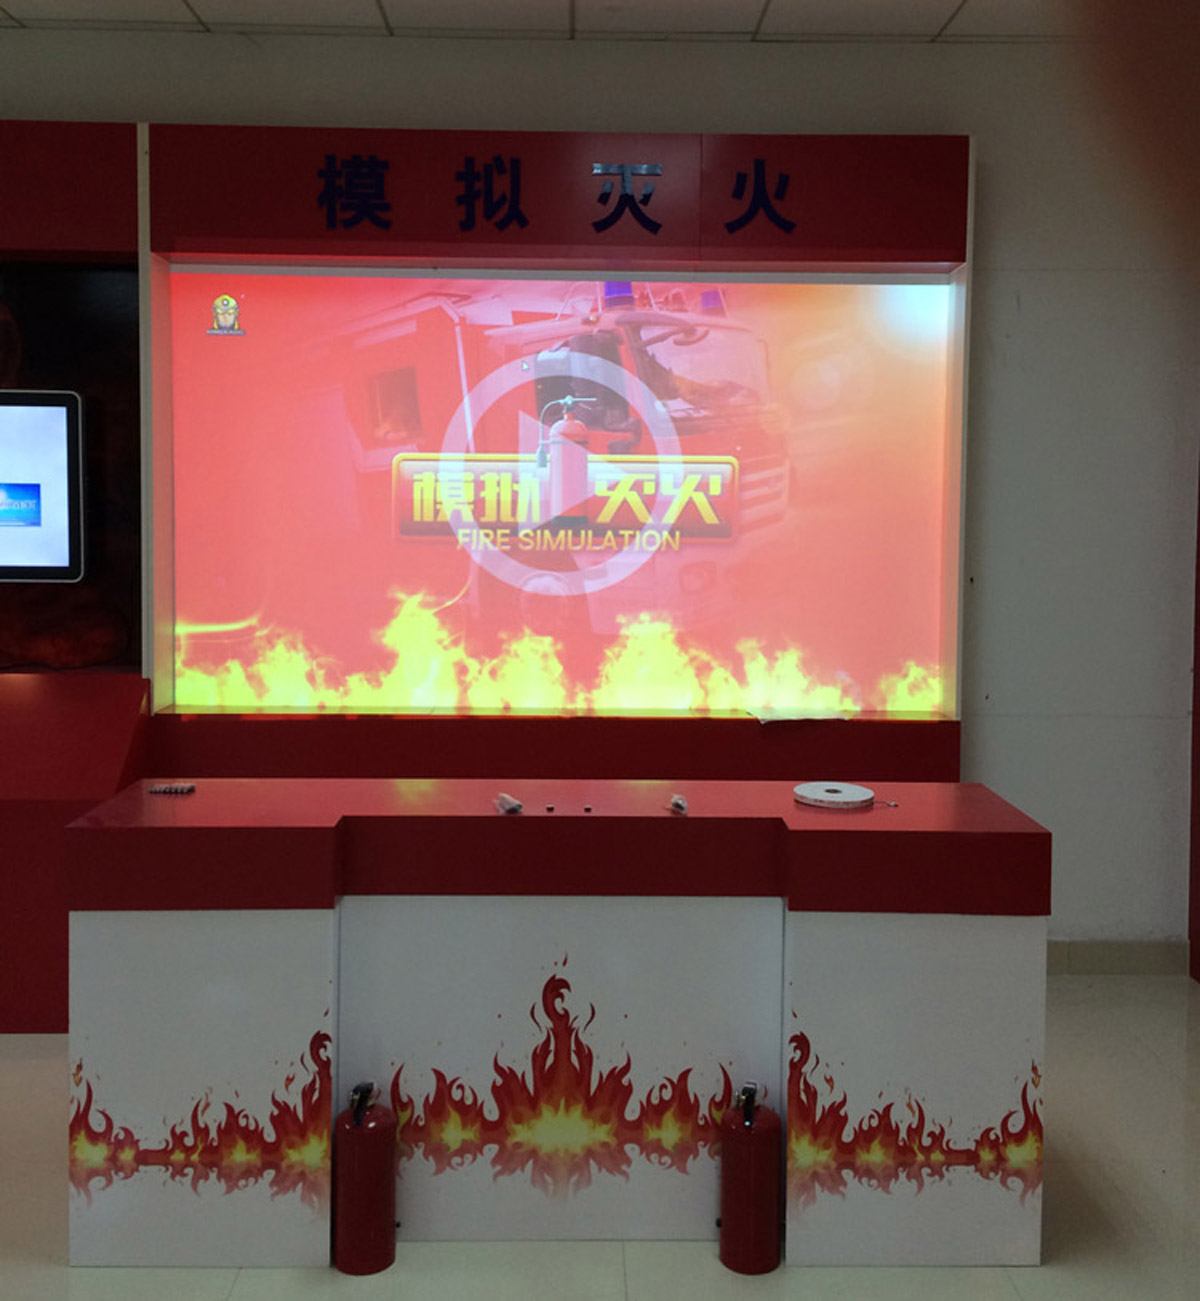 互动电影大屏幕模拟灭火体验设备.jpg